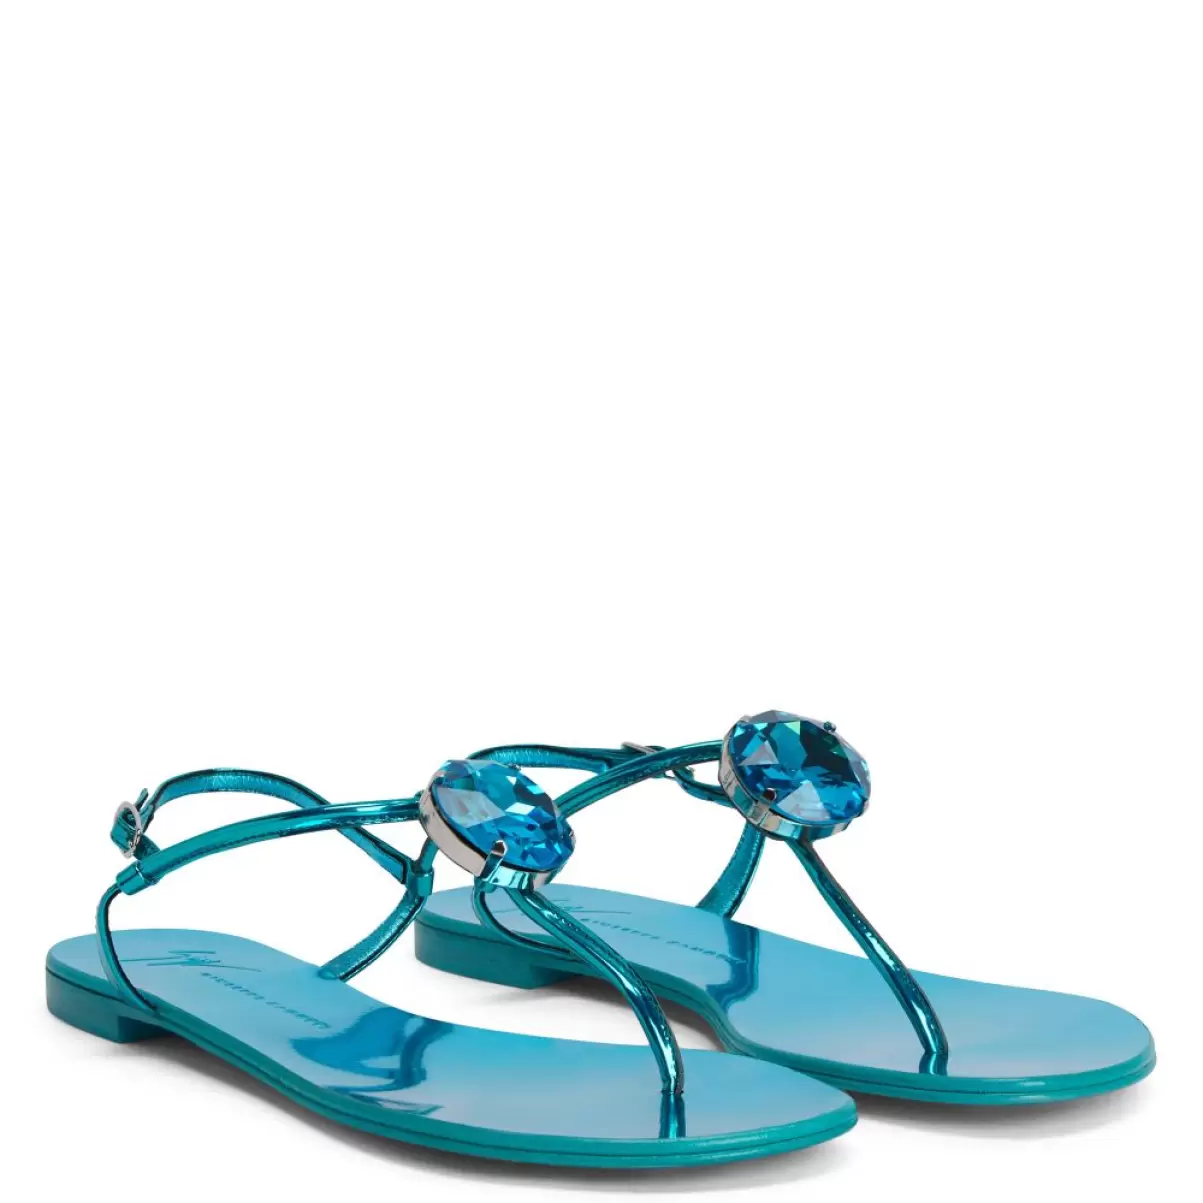 Anthonia Giuseppe Zanotti Mujer Azul Zapatos Planos - 2